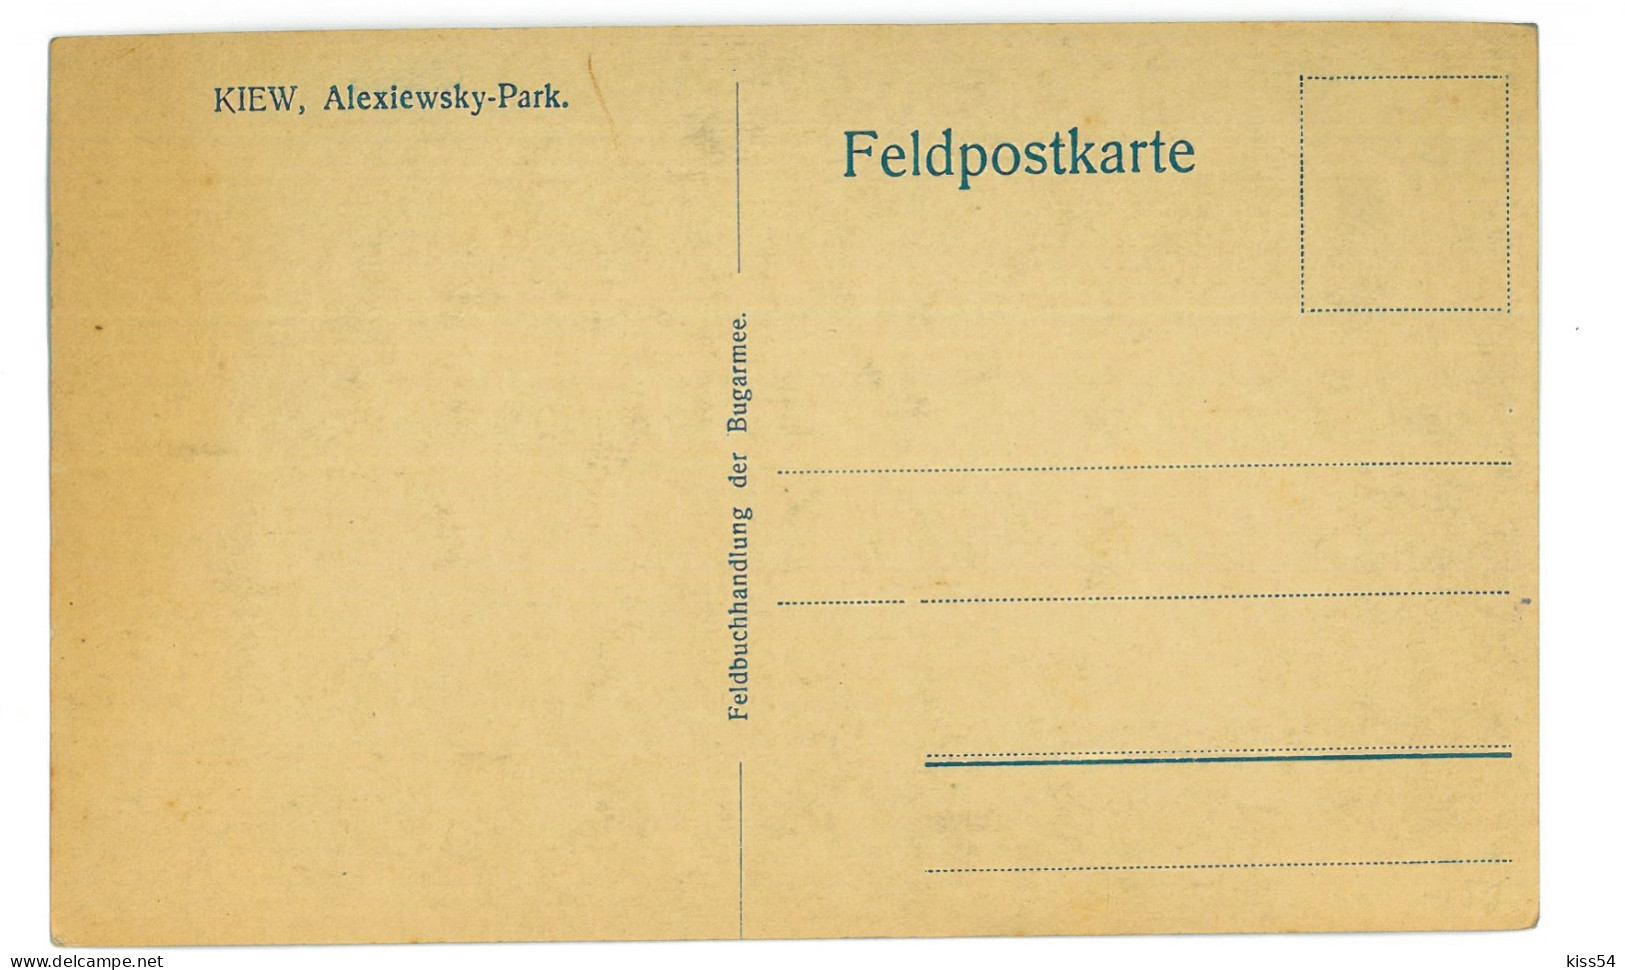 UK 29 - 24343 KIEV, Alexiewsky Park, Ukraine - Old Postcard - Unused - Ukraine